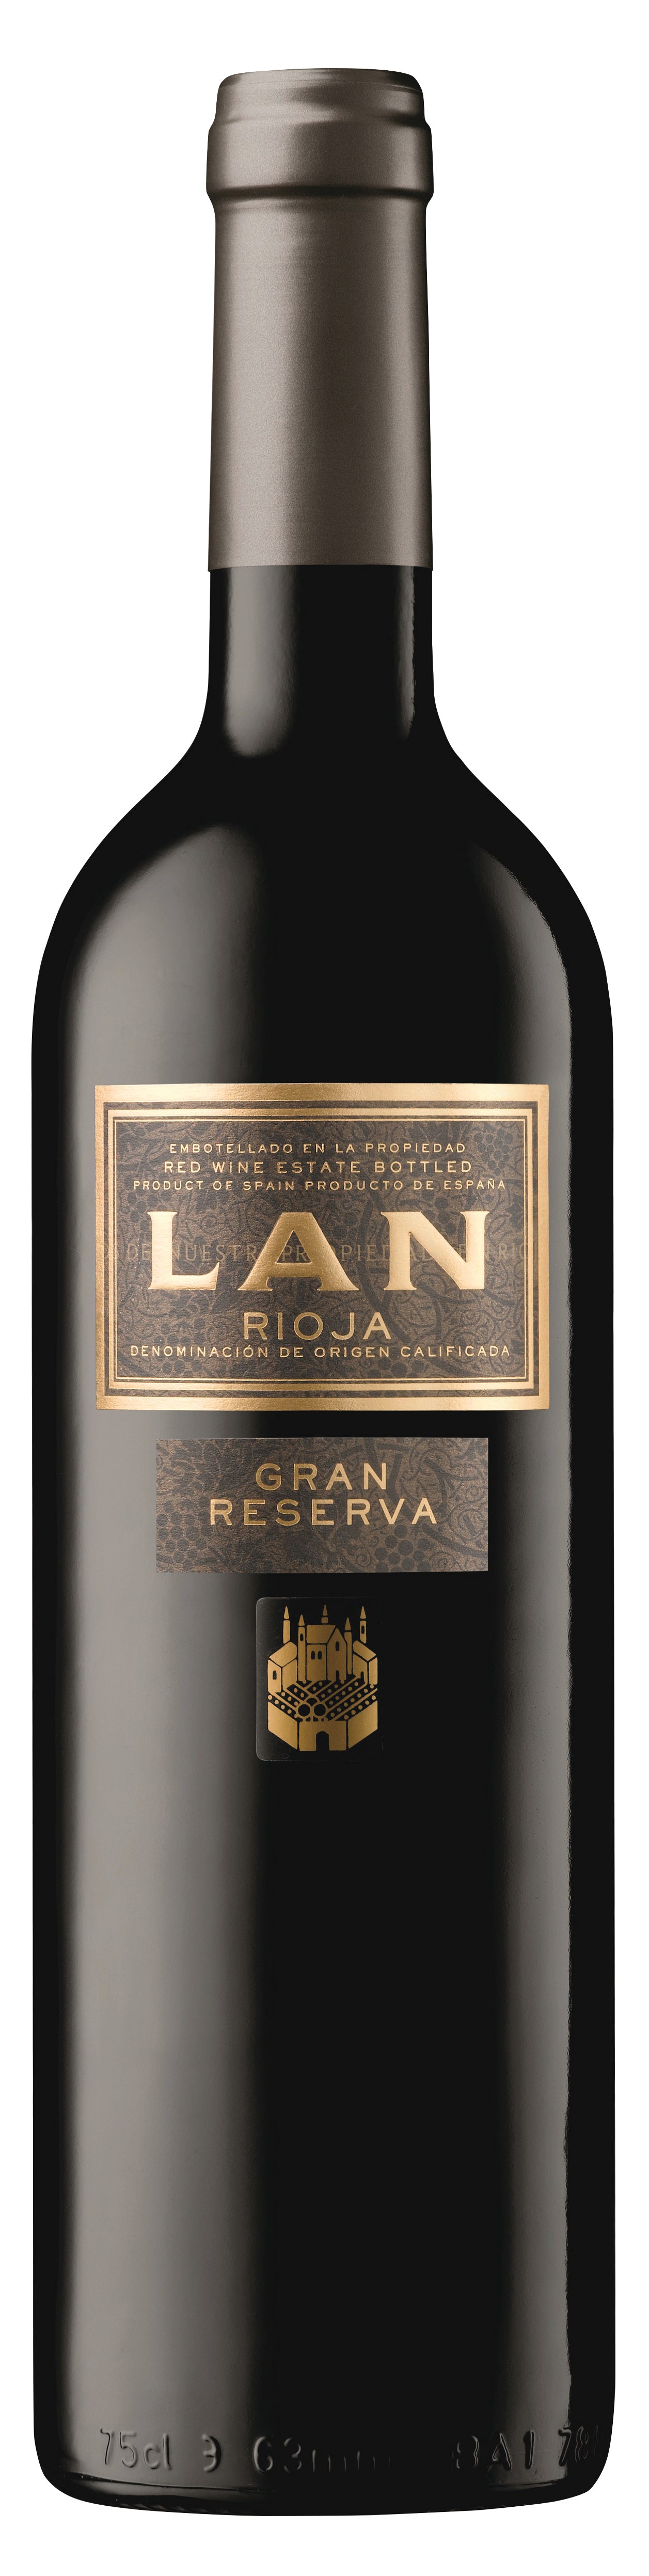 Lan Rioja Gran Reserva 2012-BK WINE DEPOT CORP 